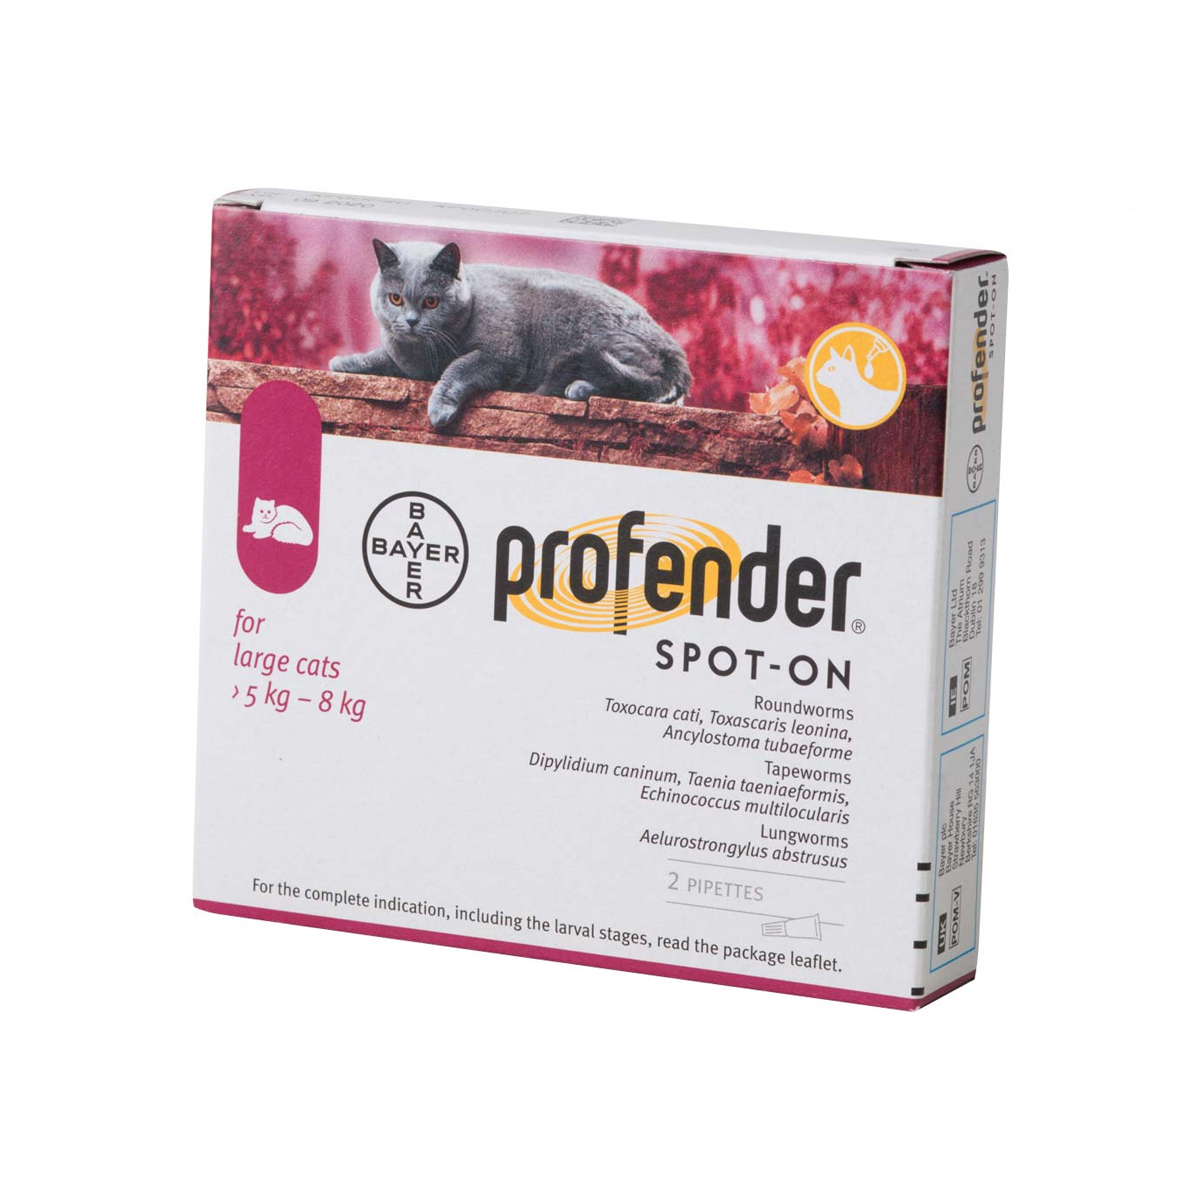 Pipetă antiparazitară Profender Cat L, pentru pisici intre 5-8kg Bayer AH imagine 2022